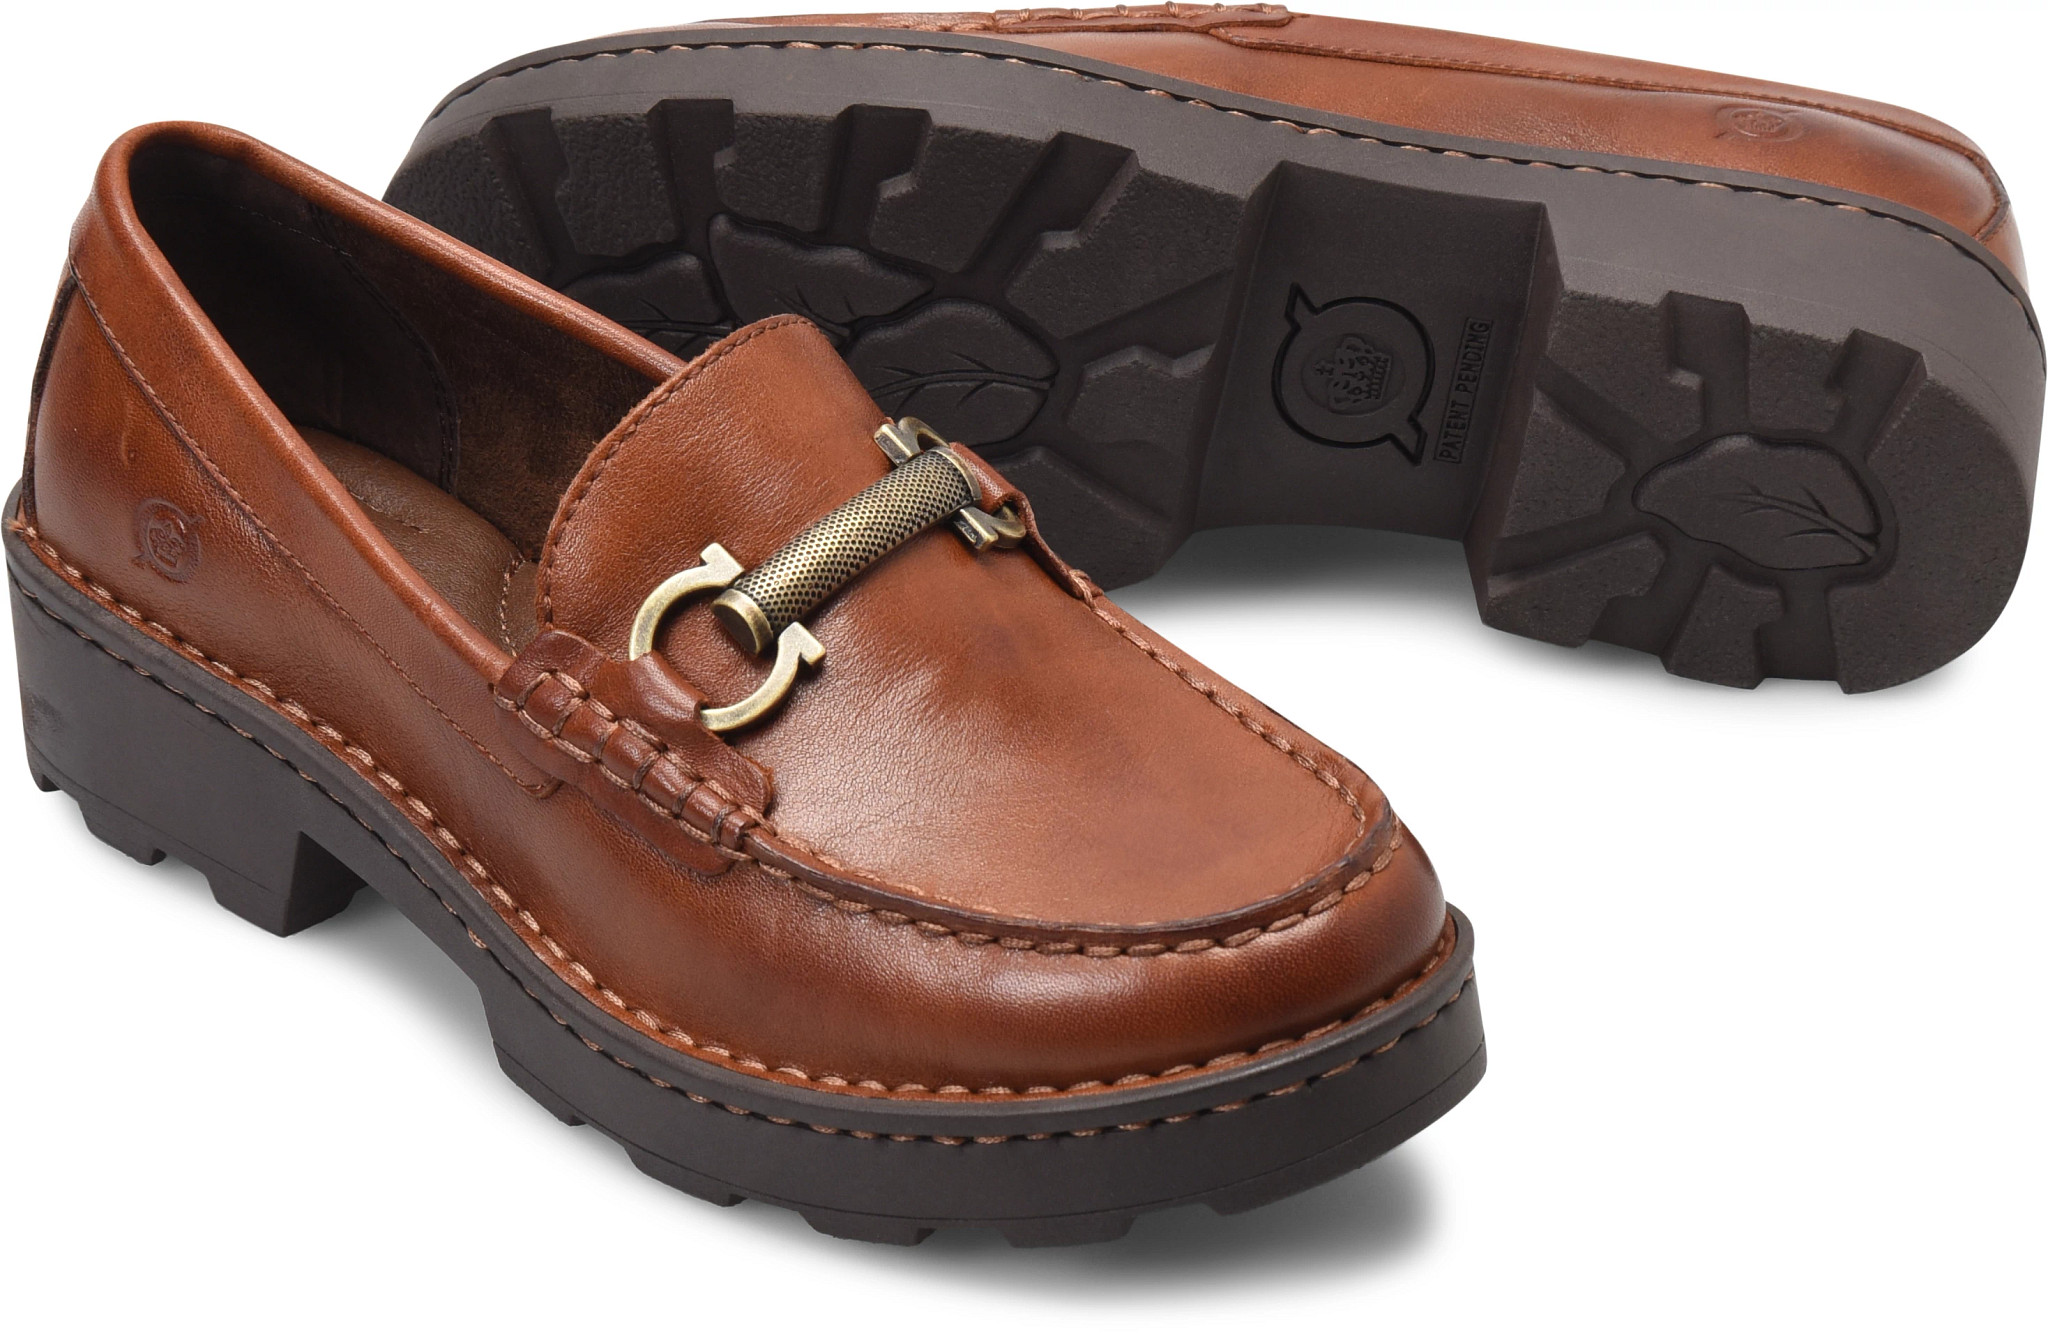 Slippers Gancini Ferragamo de Cuero de color Marrón para hombre Hombre Zapatos de Zapatos sin cordones de Zapatillas de casa 